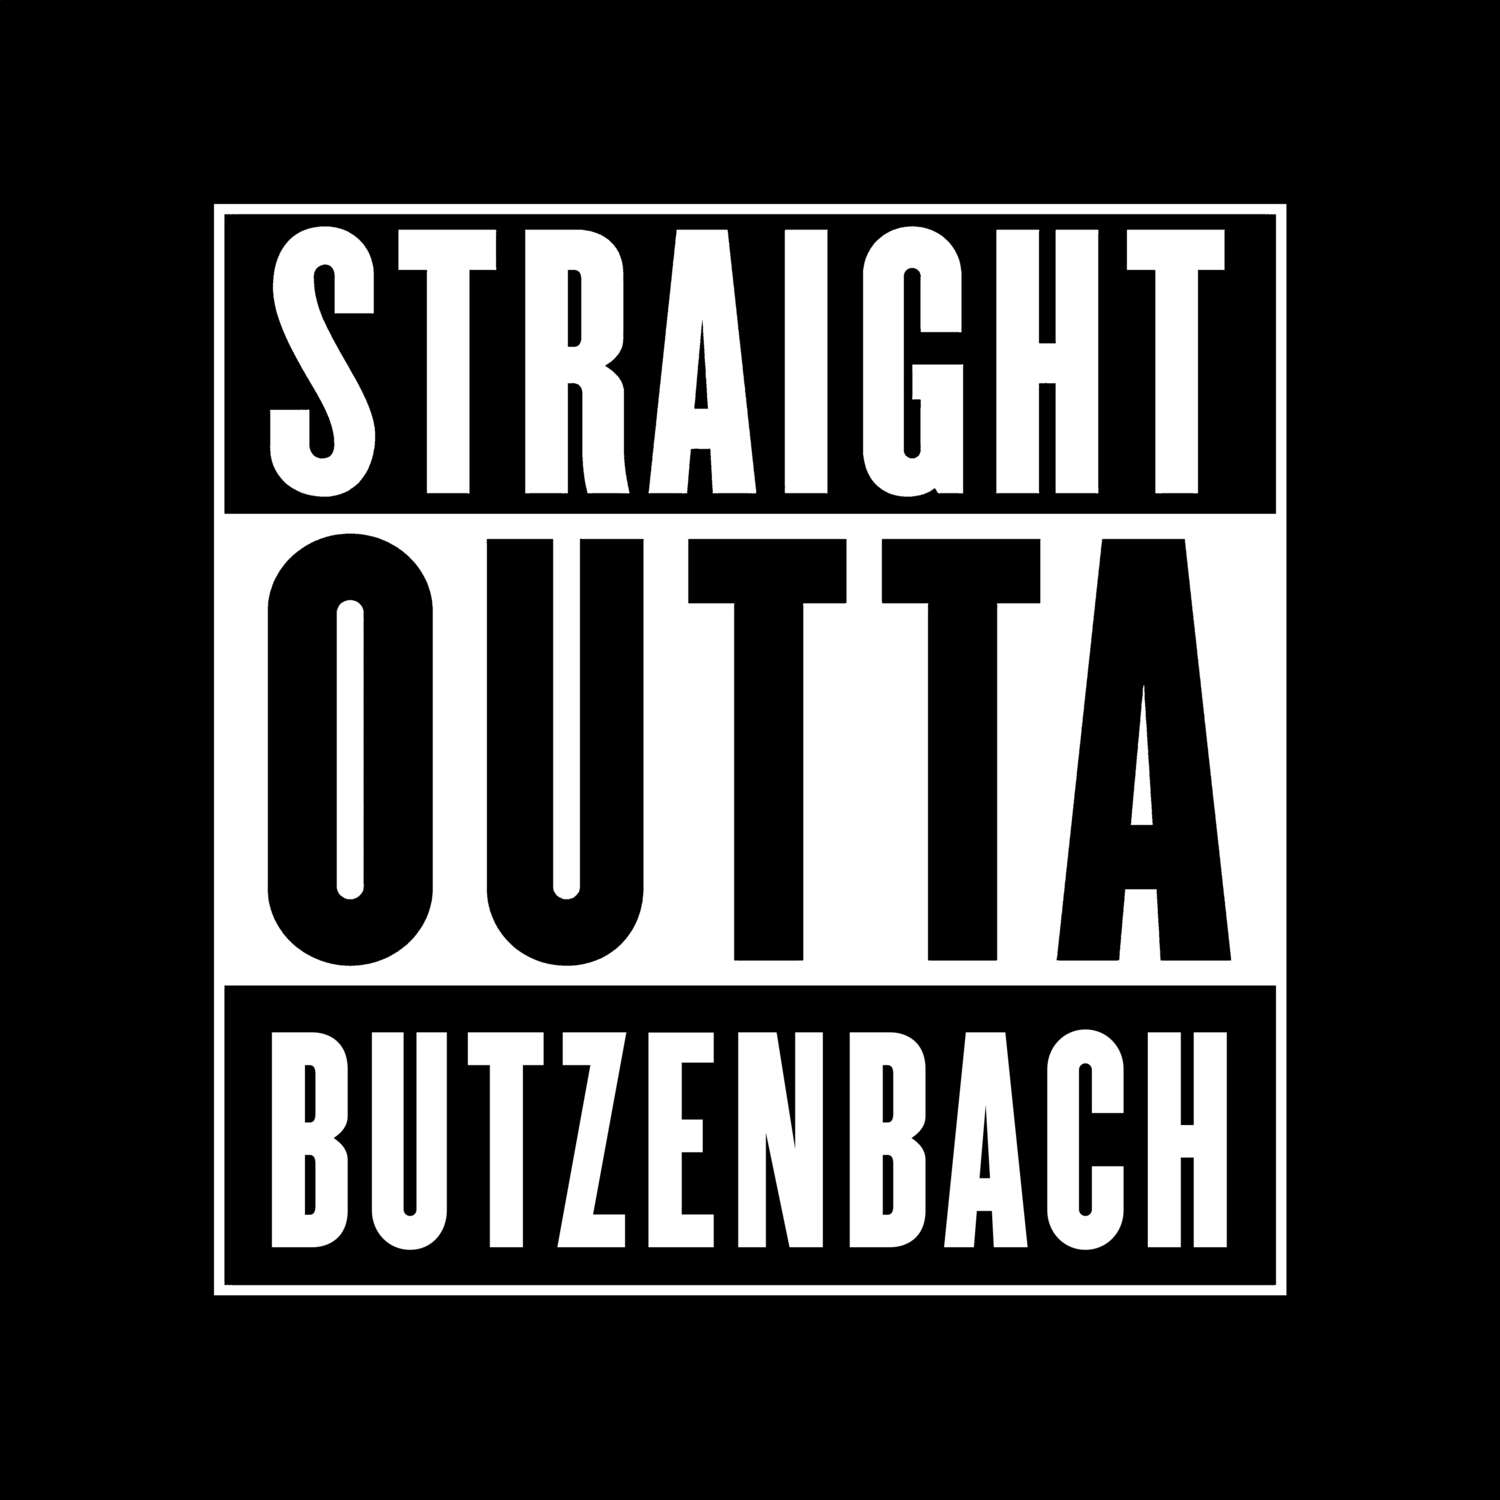 Butzenbach T-Shirt »Straight Outta«